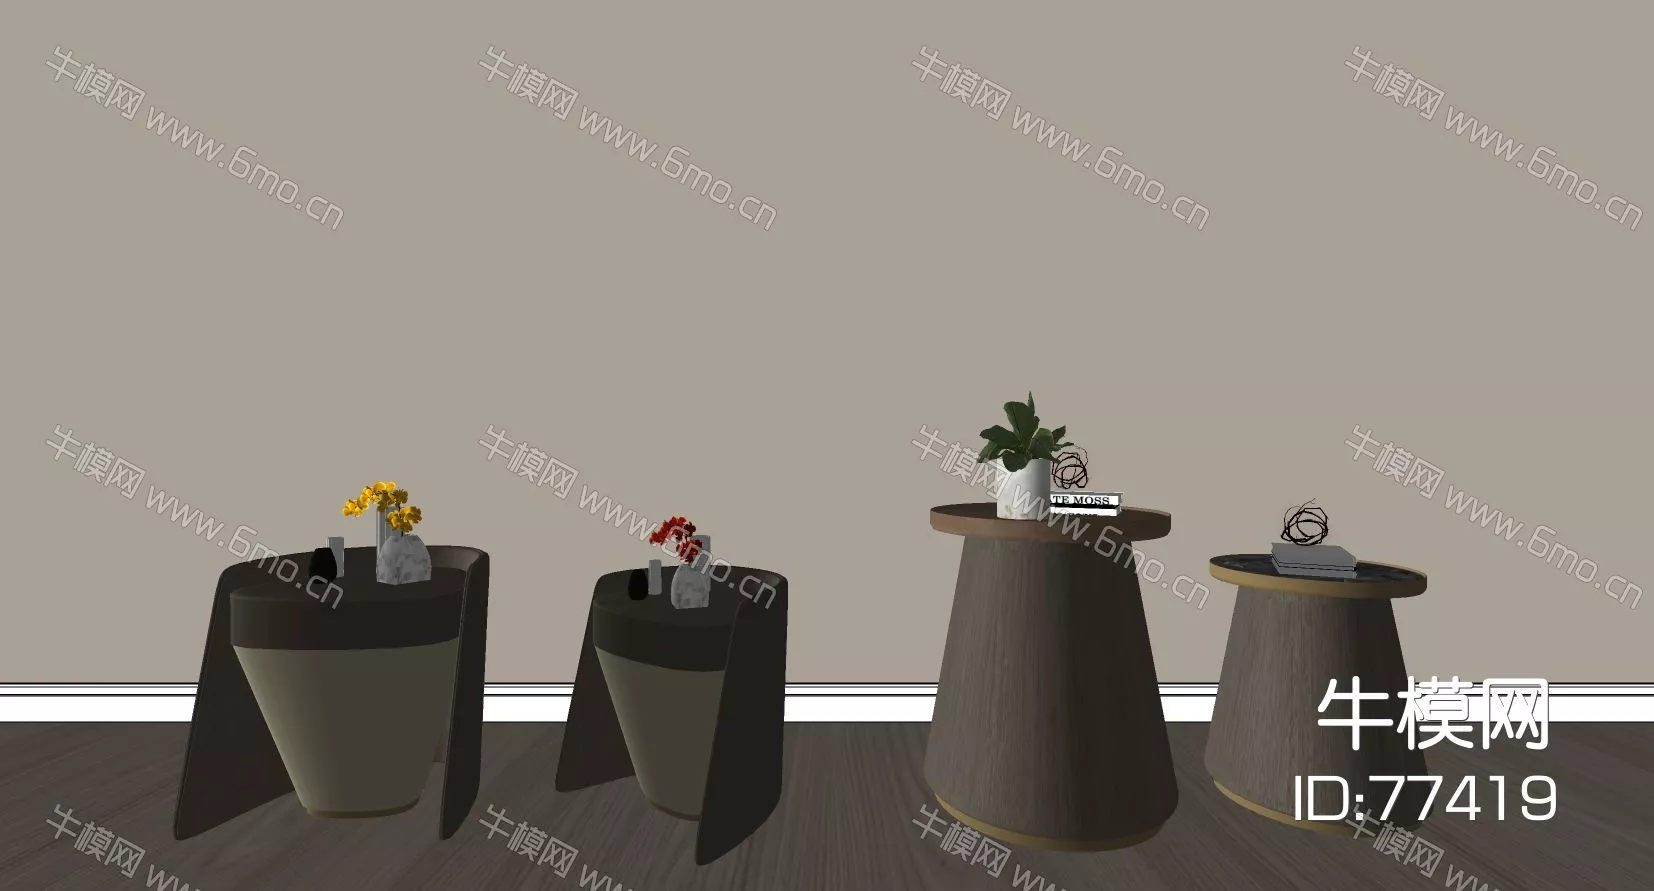 MODERN SIDE TABLE - SKETCHUP 3D MODEL - ENSCAPE - 77419